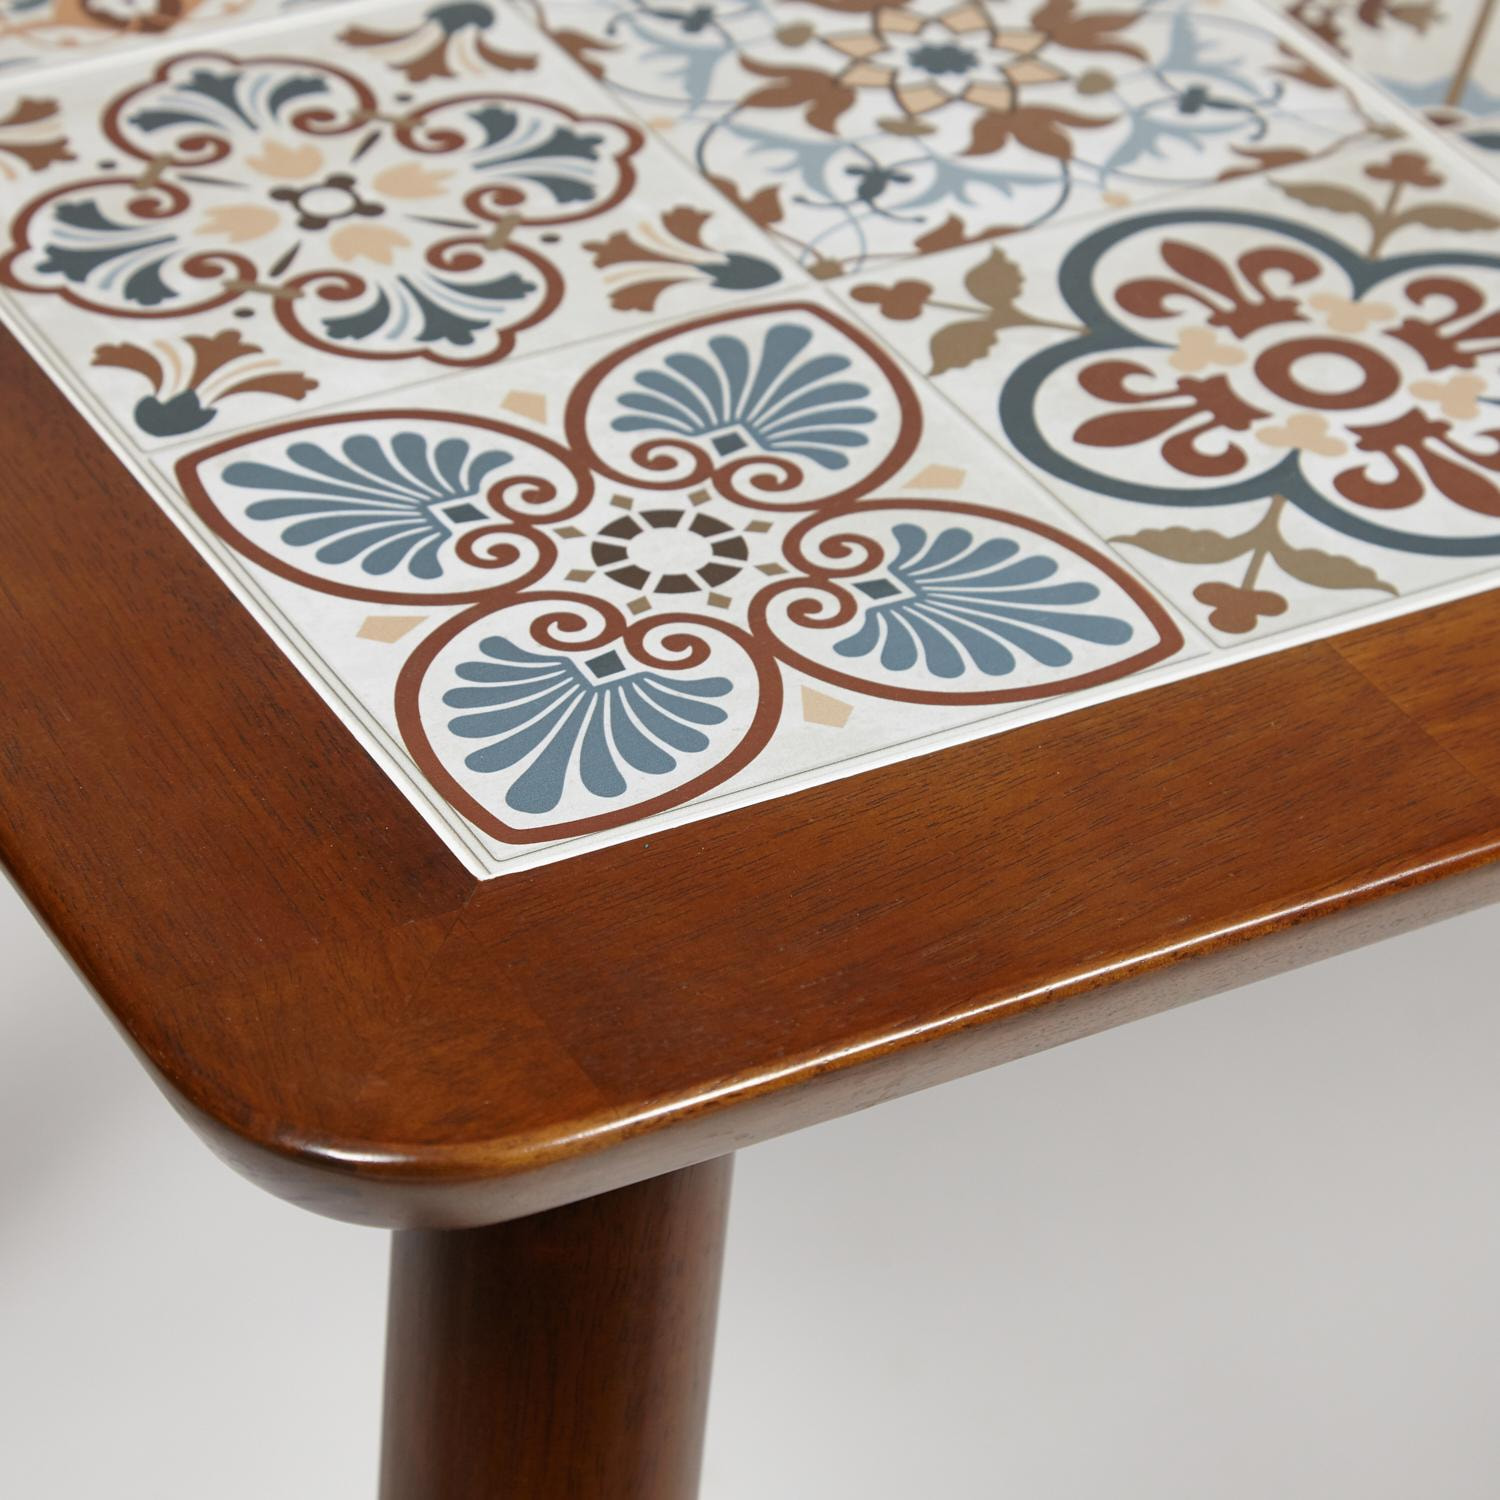 CT3052 Tanger стол с плиткой дерево гевея/плитка, 74*134*75см, Тёмный Дуб, рисунок - марокко